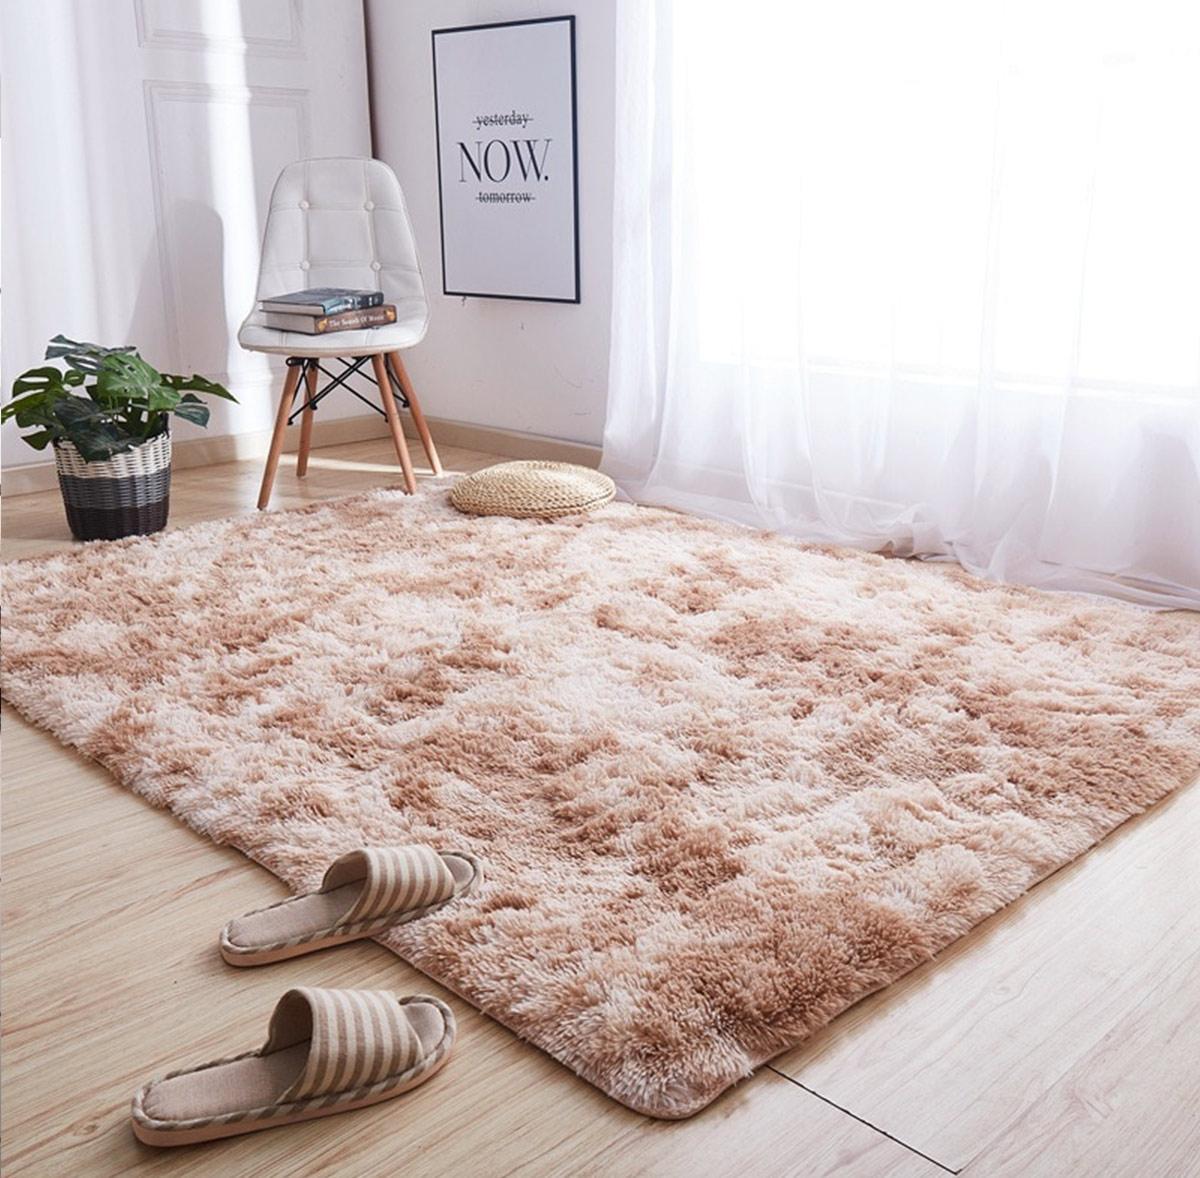 Mẹo hay trang trí phòng ốc thêm bắt mắt với mẫu thảm lót sàn đơn giản